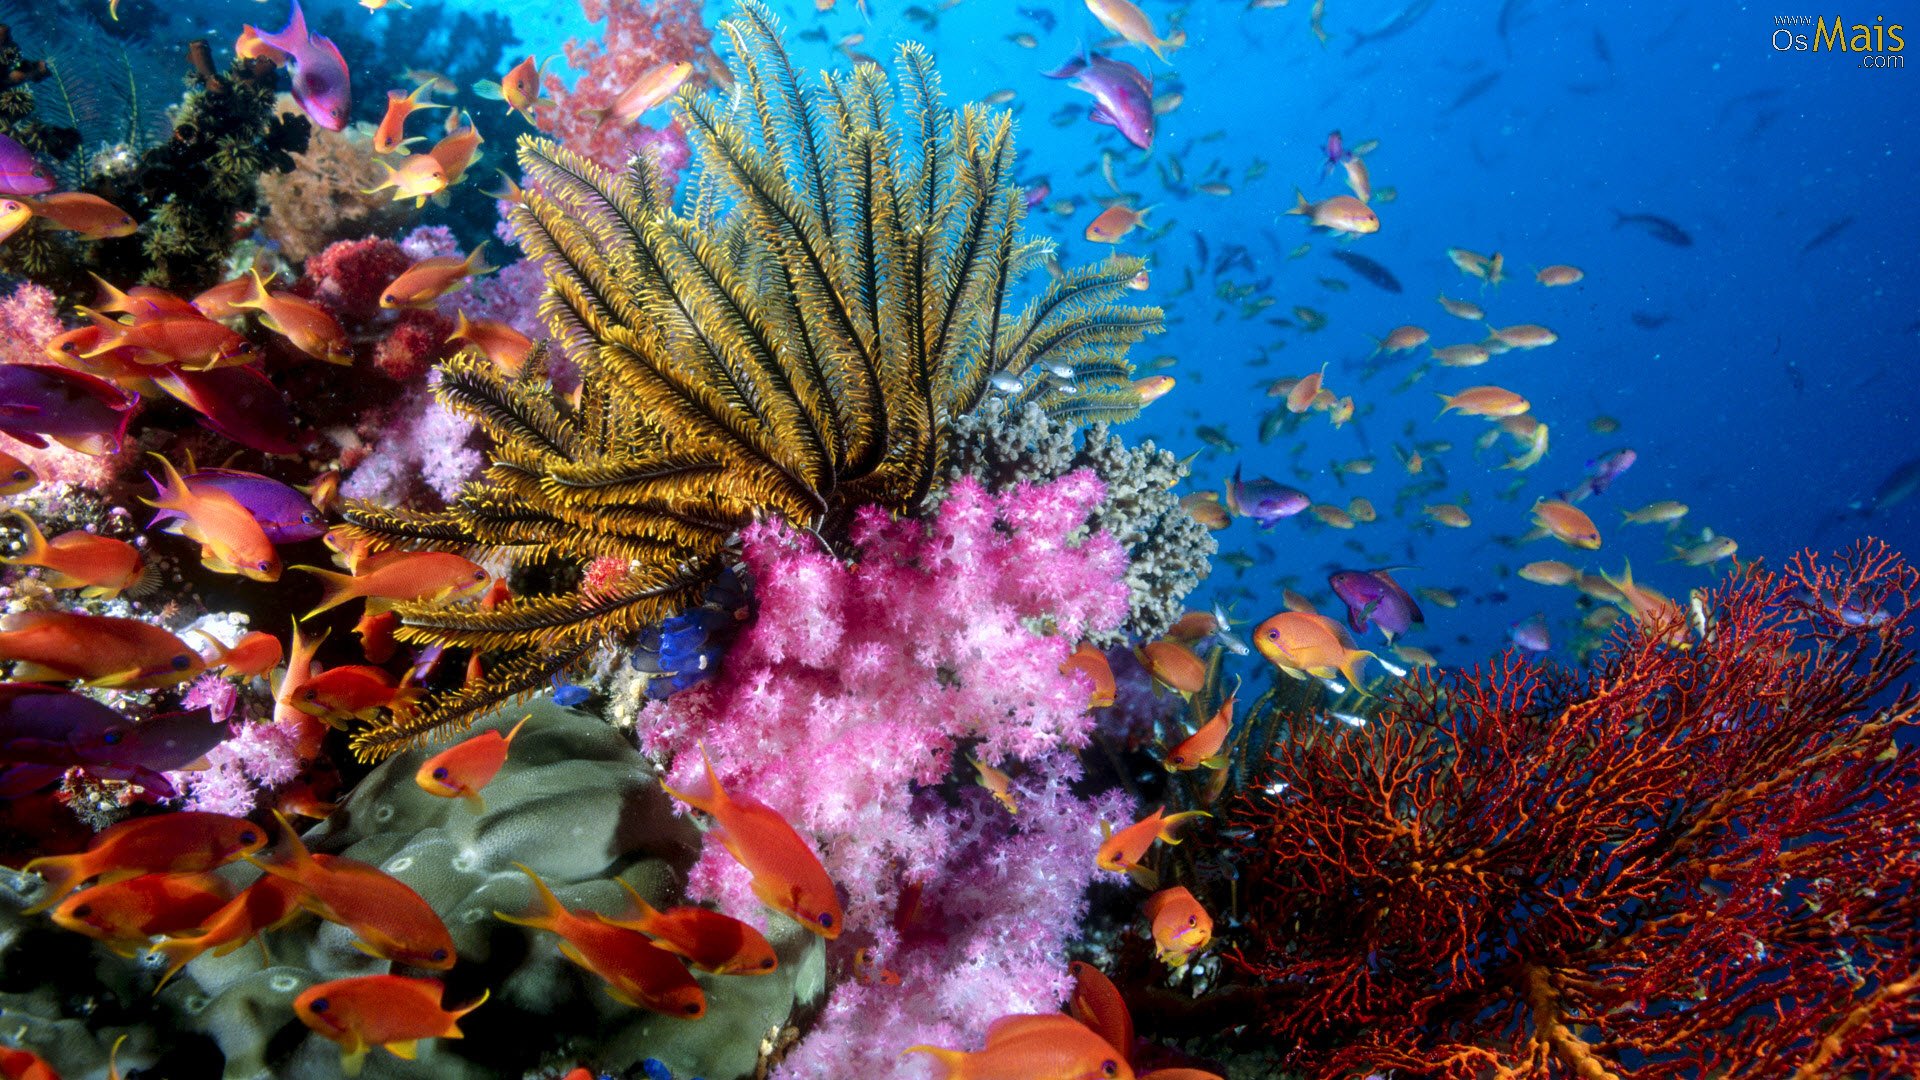 wallpaper fundo do mar,reef,coral reef,underwater,marine biology,coral reef fish